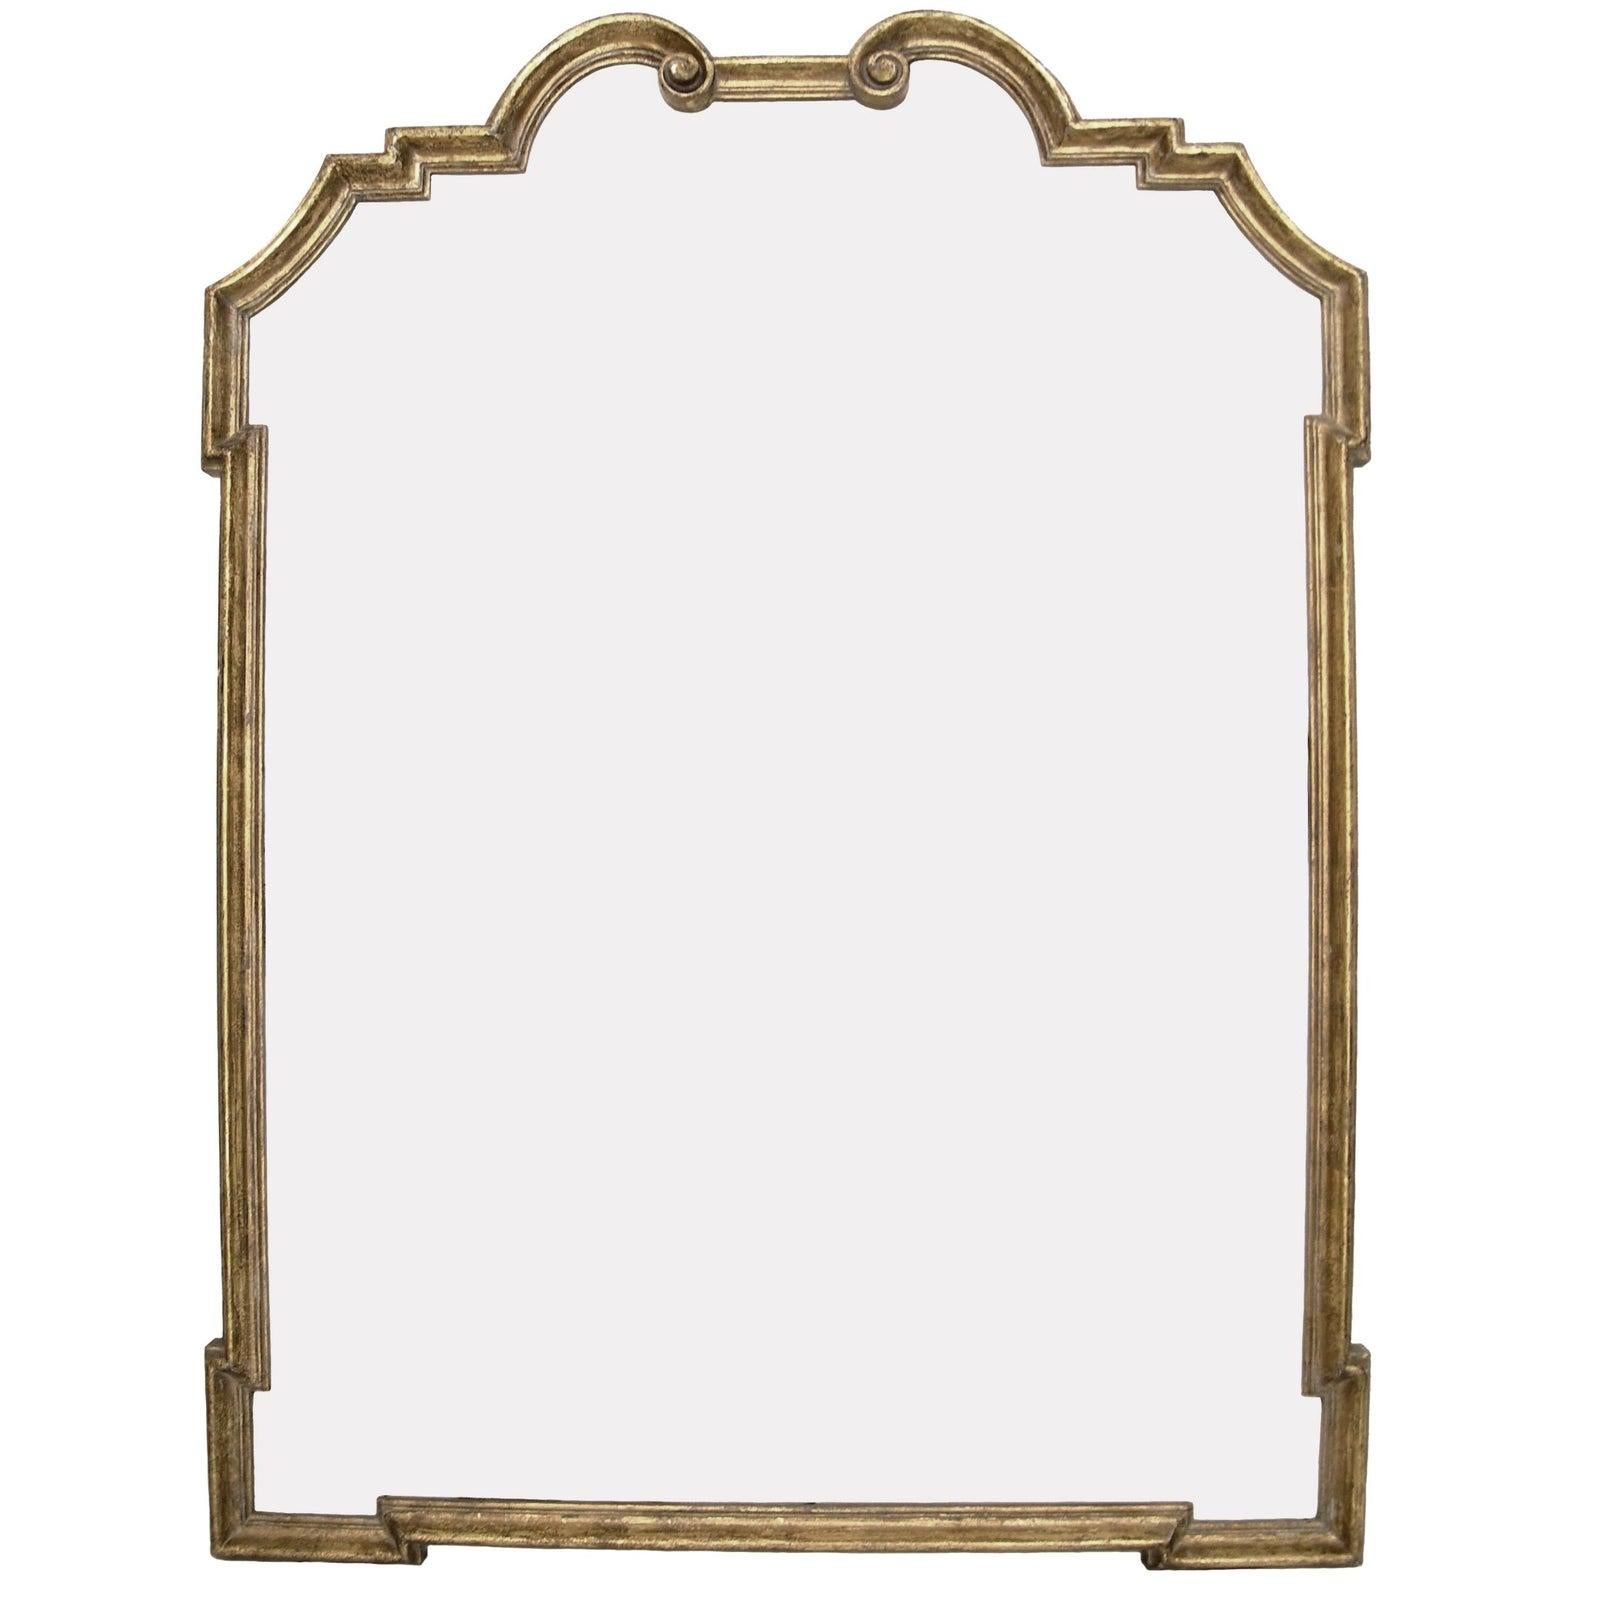 Italienischer Designer-Spiegel aus vergoldetem Holz von Randy Esada. Erhältlich in Gelb- oder Weißgold

Aufpreis für gealterten Spiegel: $685

4 auf Lager, 2 Gelbgold, 2 Weißgold.
  